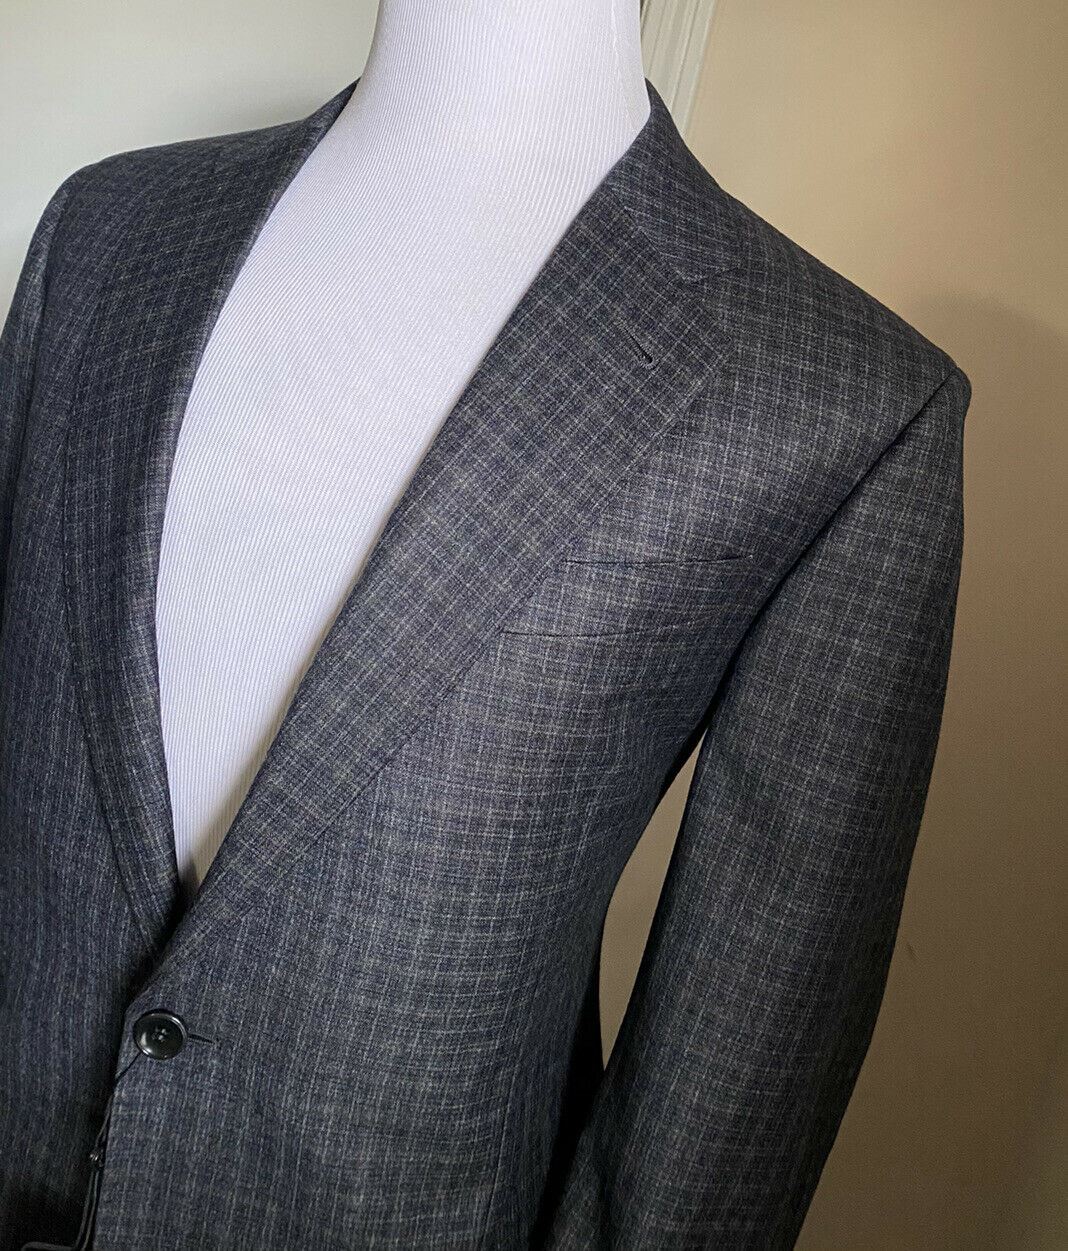 Новый мужской костюм из мягкой шерсти Giorgio Armani DK Grey CK 42R за 4500 долларов США ( 52R EU ) Италия